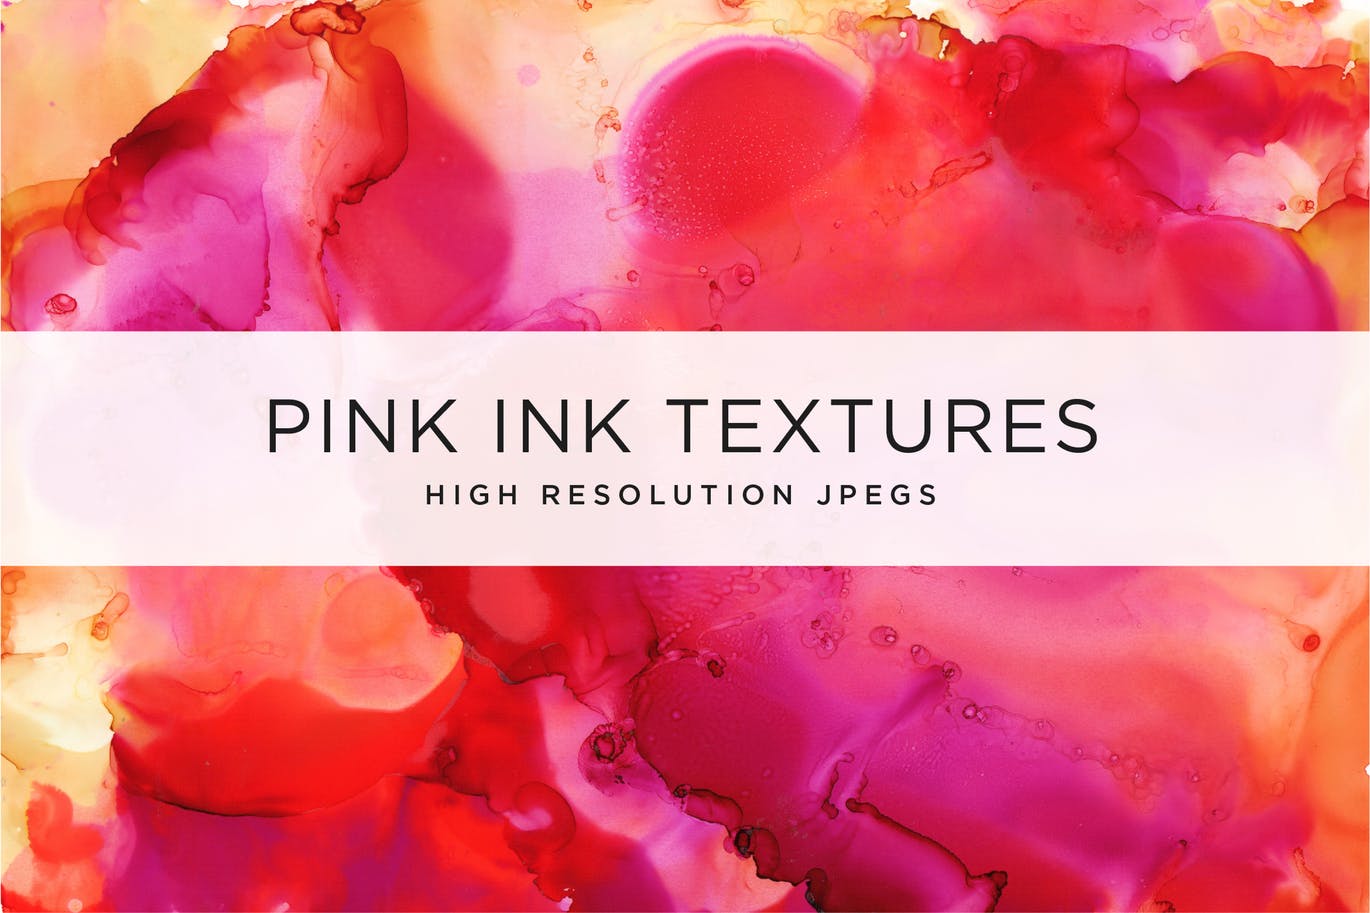 13种酒精水彩混合肌理纹理素材 Pink Ink Textures插图